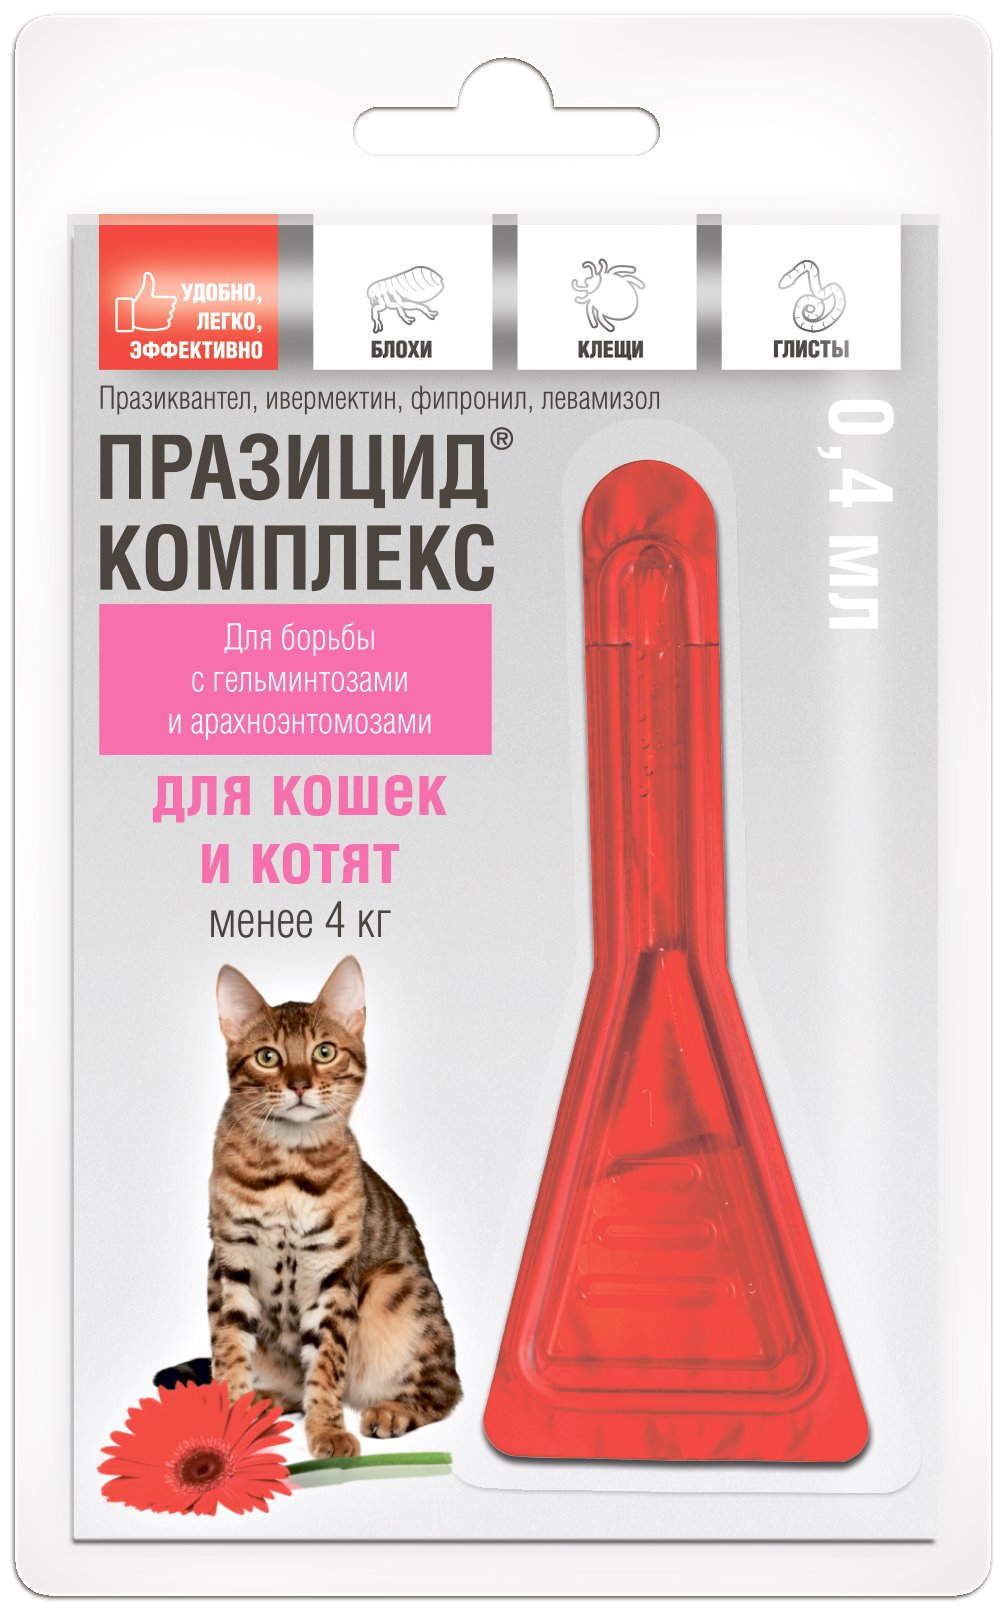 Празицид ® комплекс для кошек и котят 1 пип. 0,4 мл. в упак. купить по  низкой цене с доставкой - БиоСтайл